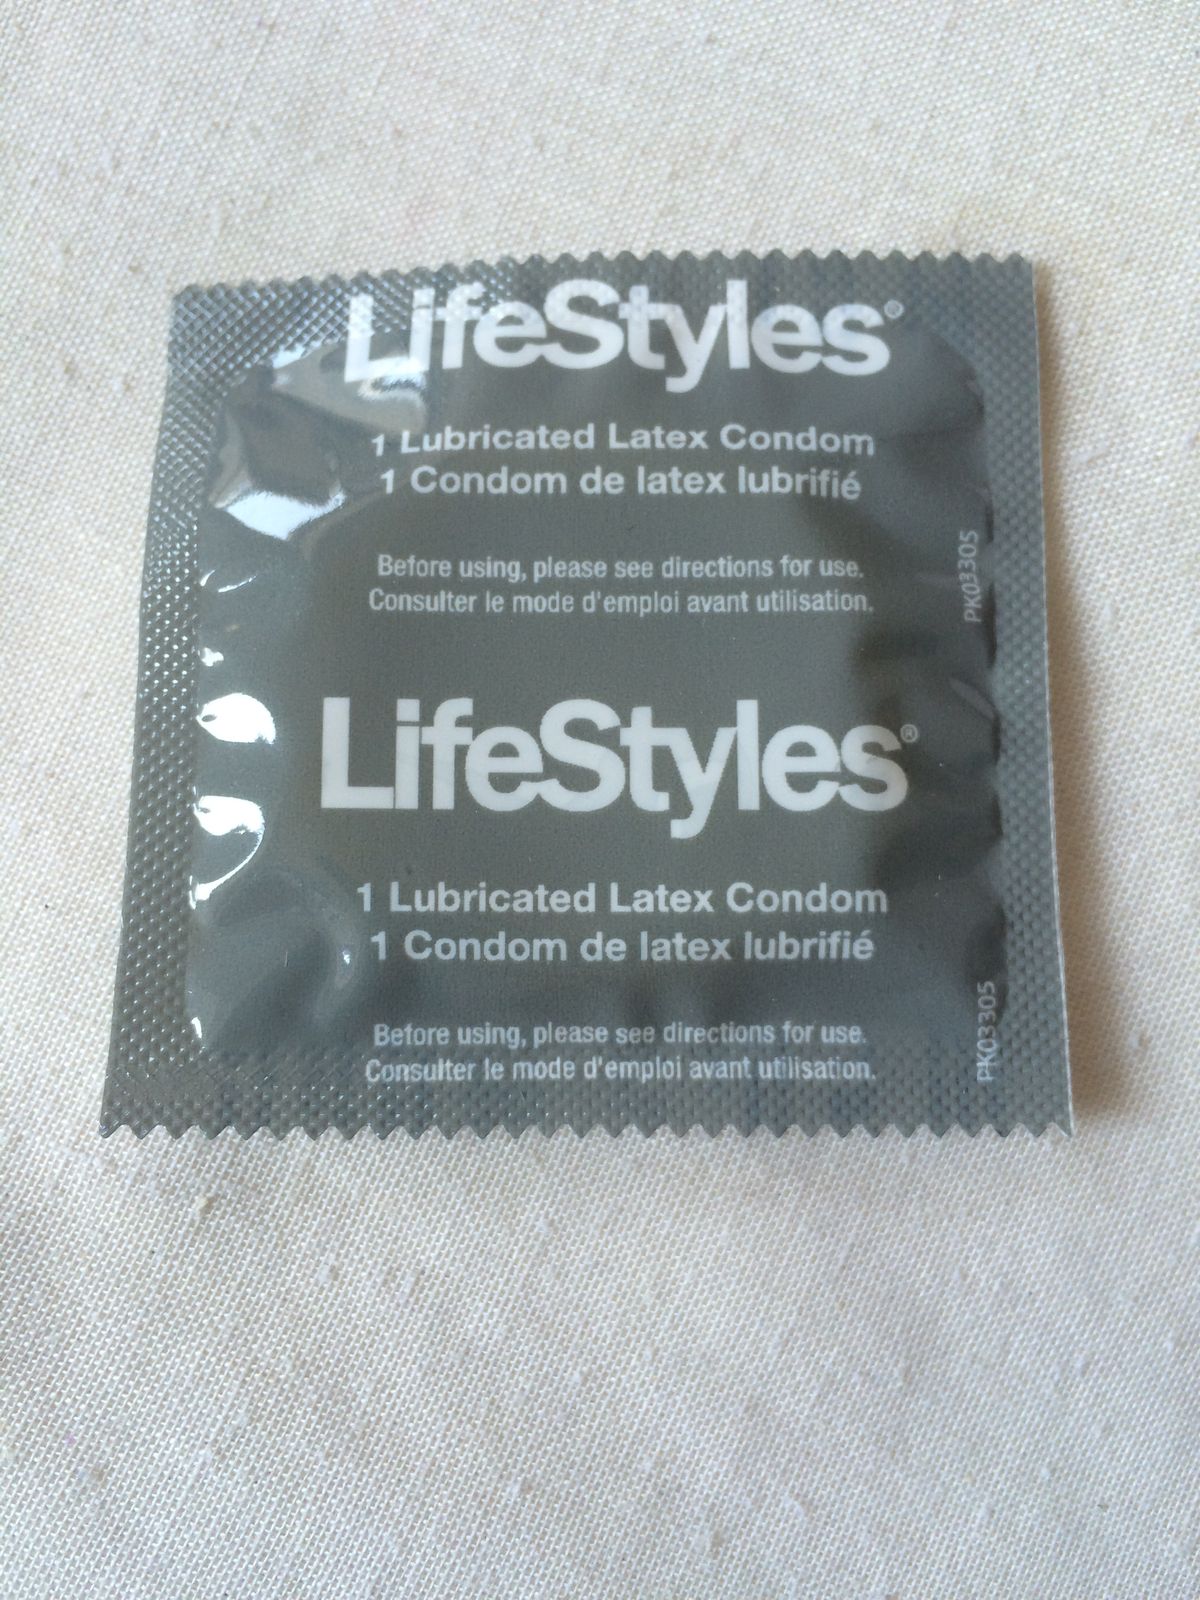 Katsetasin läbi 7 kondoomi ja näete, kuidas need kokku pakuvad